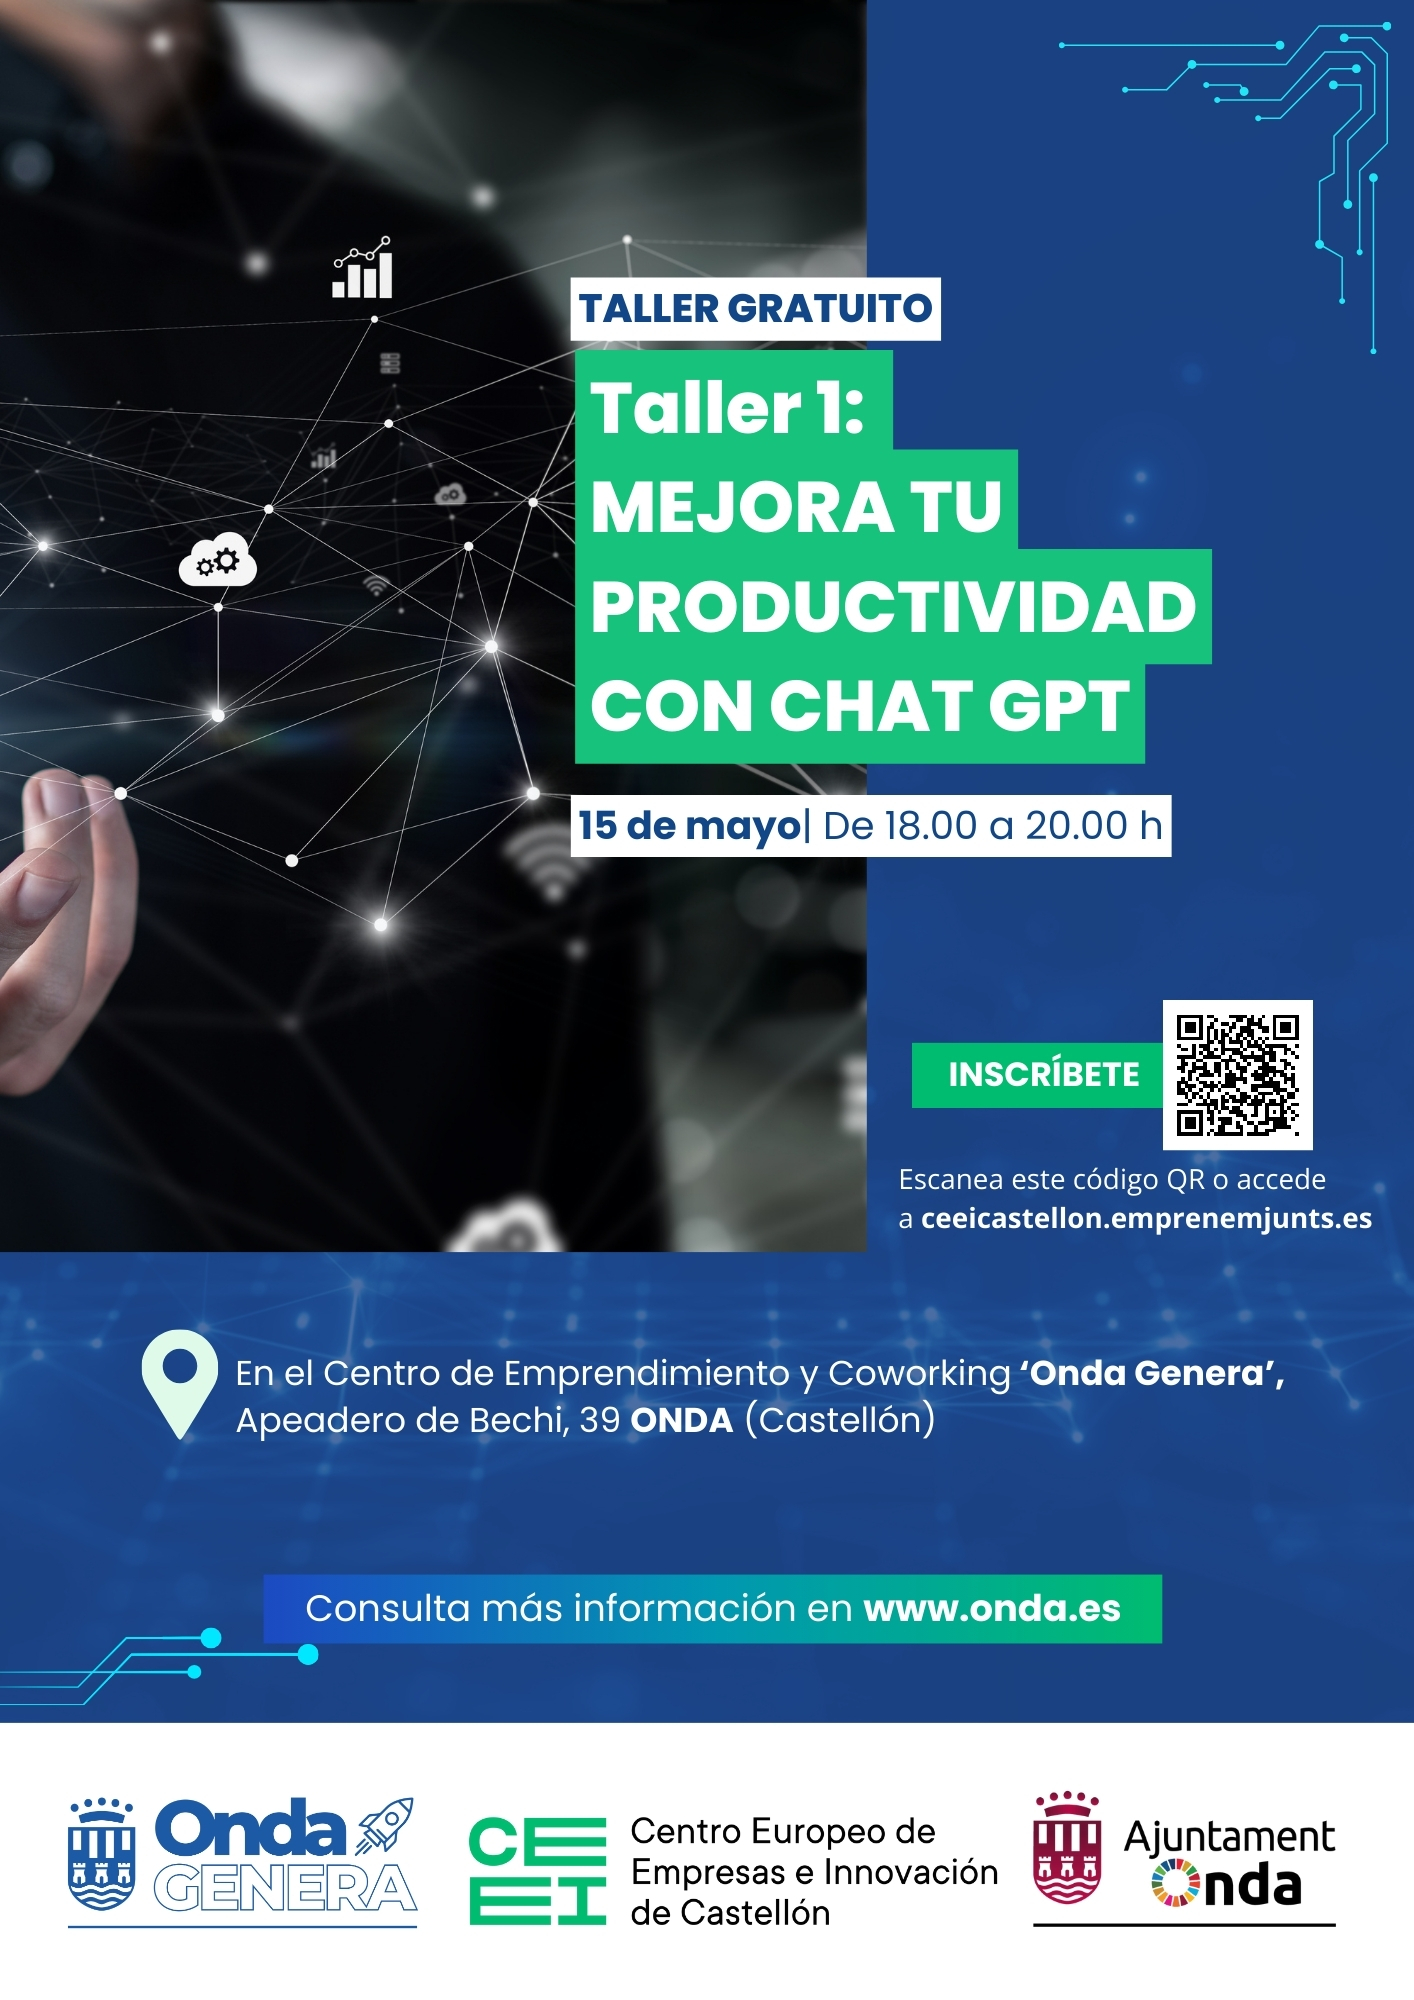 Taller 1 con Inteligencia Artificial: Mejora tu productividad con chat GPT